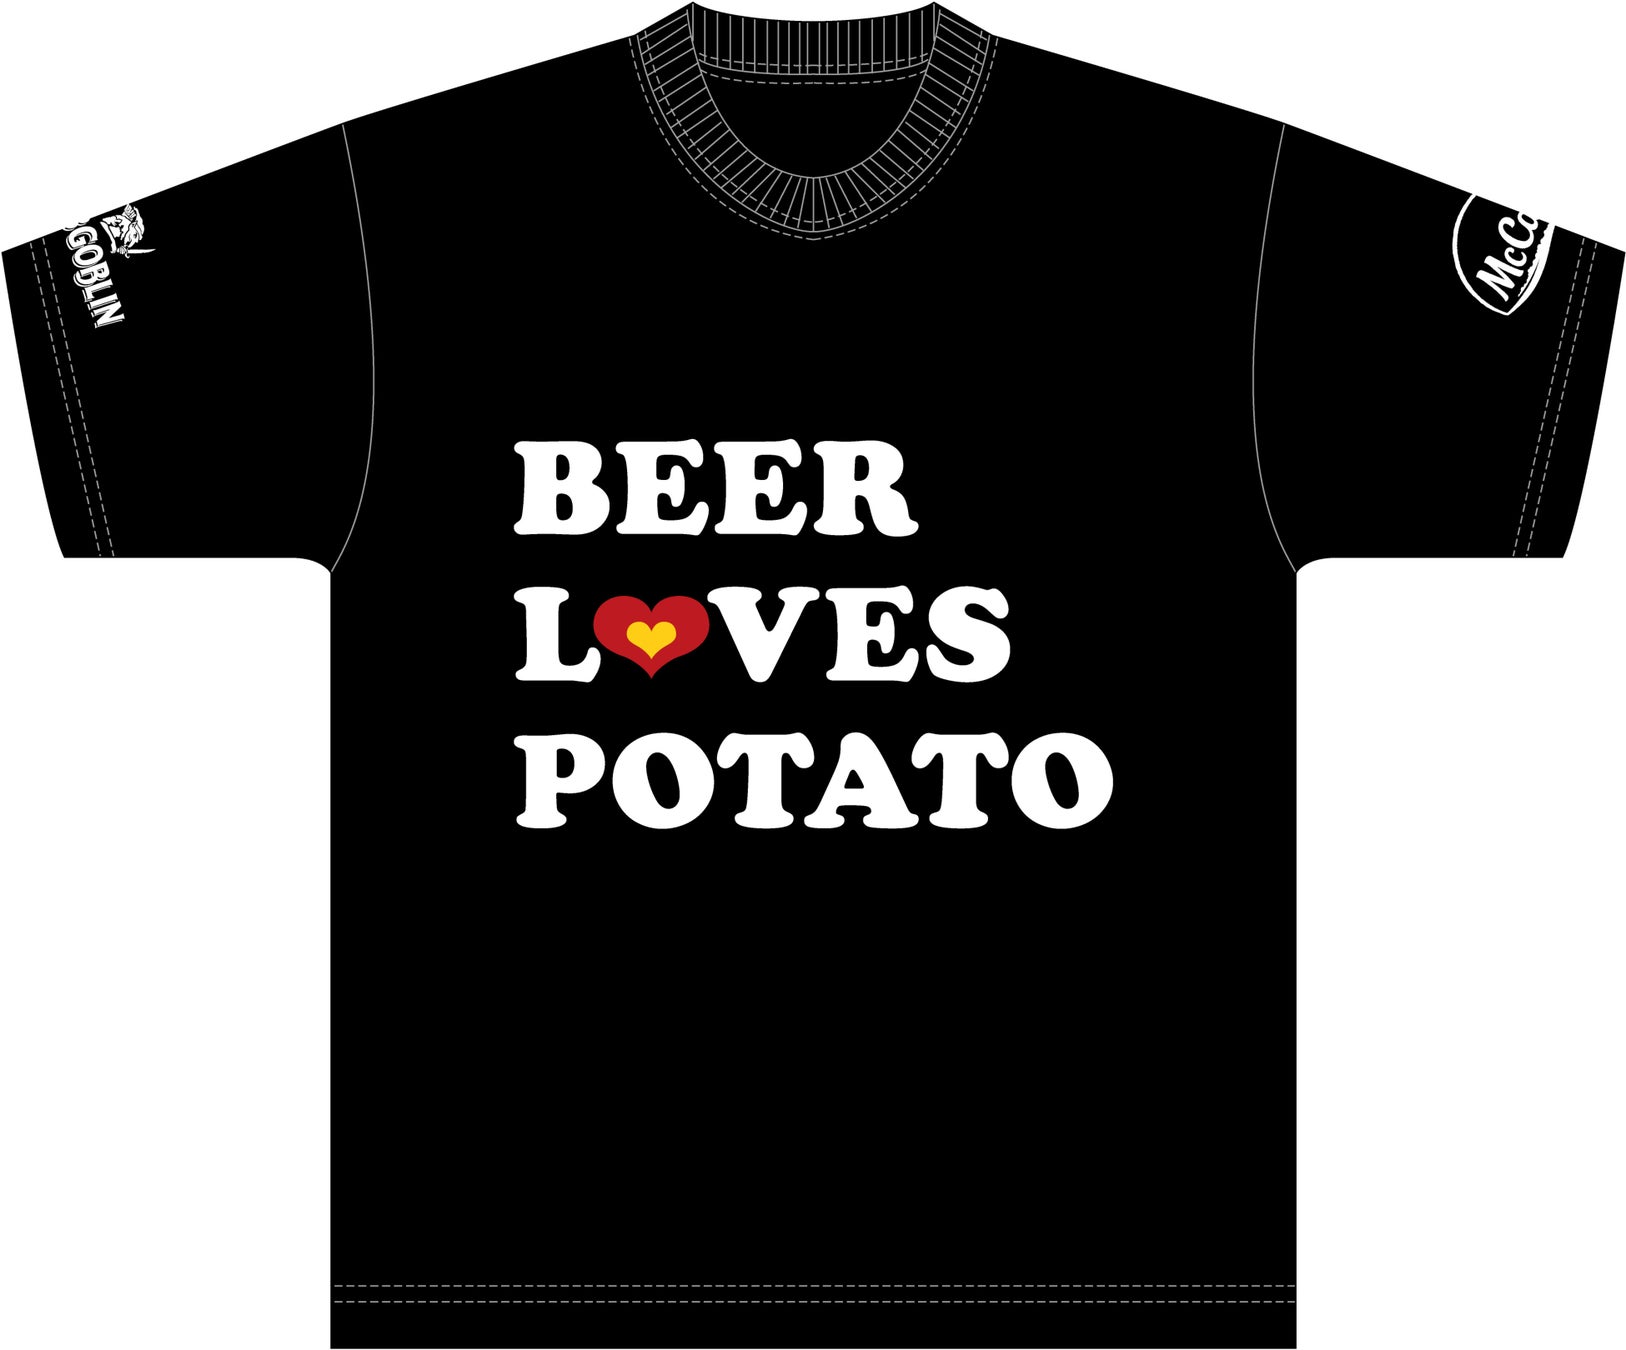 マッケイン “BEER LOVES POTATO”キャンペーン「ホブゴブリンパブ」とコラボし、六本木・渋谷2店舗で10月10日開始のサブ画像4_「BEER LOVES POTATO」オリジナルTシャツ